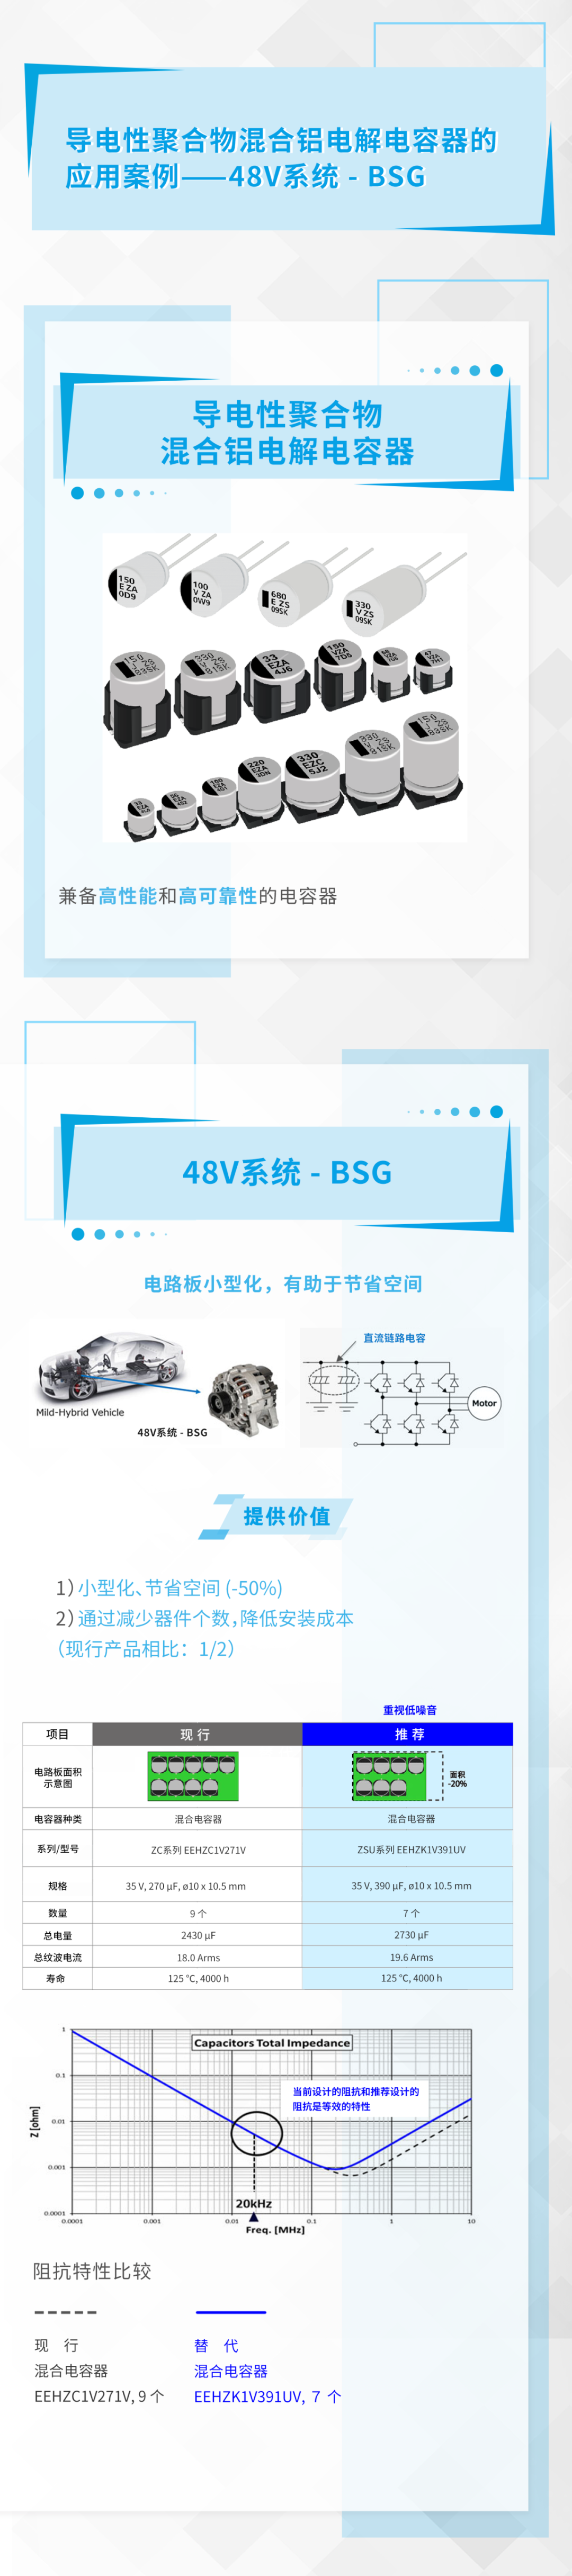 松下丨导电性聚合物混合铝电解电容器的应用案例——48V系统·BSG